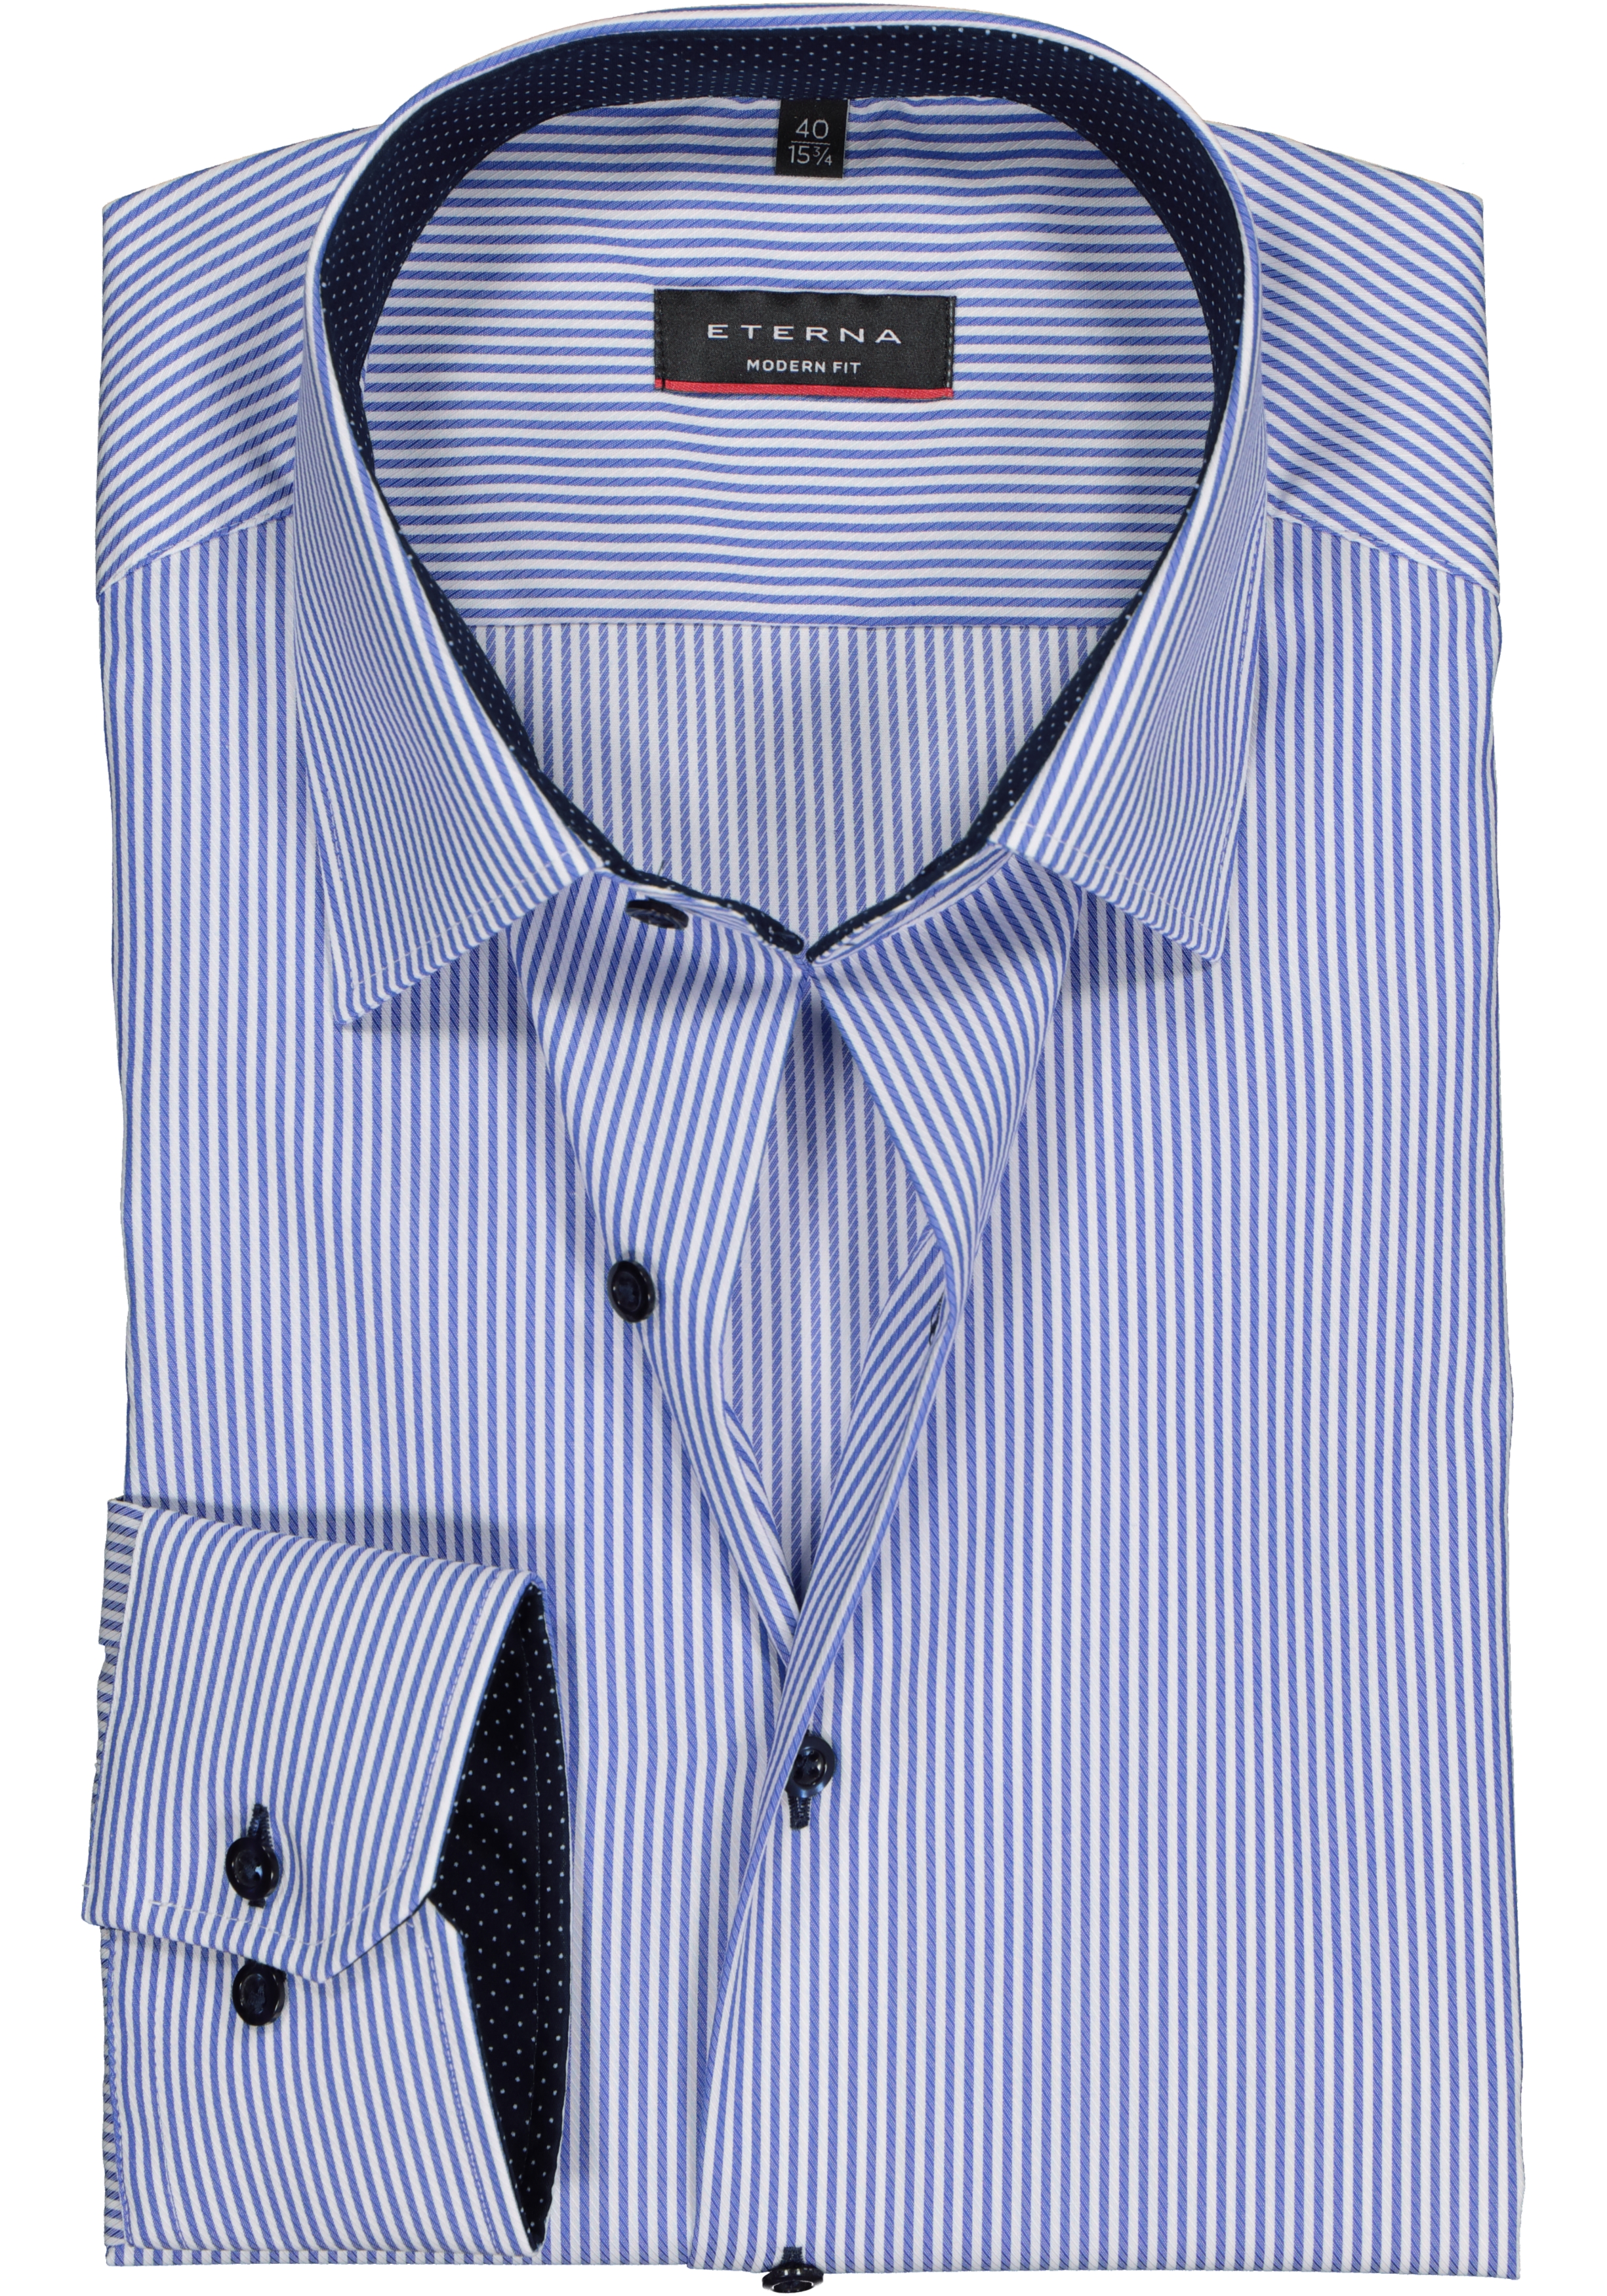 ETERNA modern fit overhemd, twill heren overhemd, blauw met wit gestreept (blauw contrast)